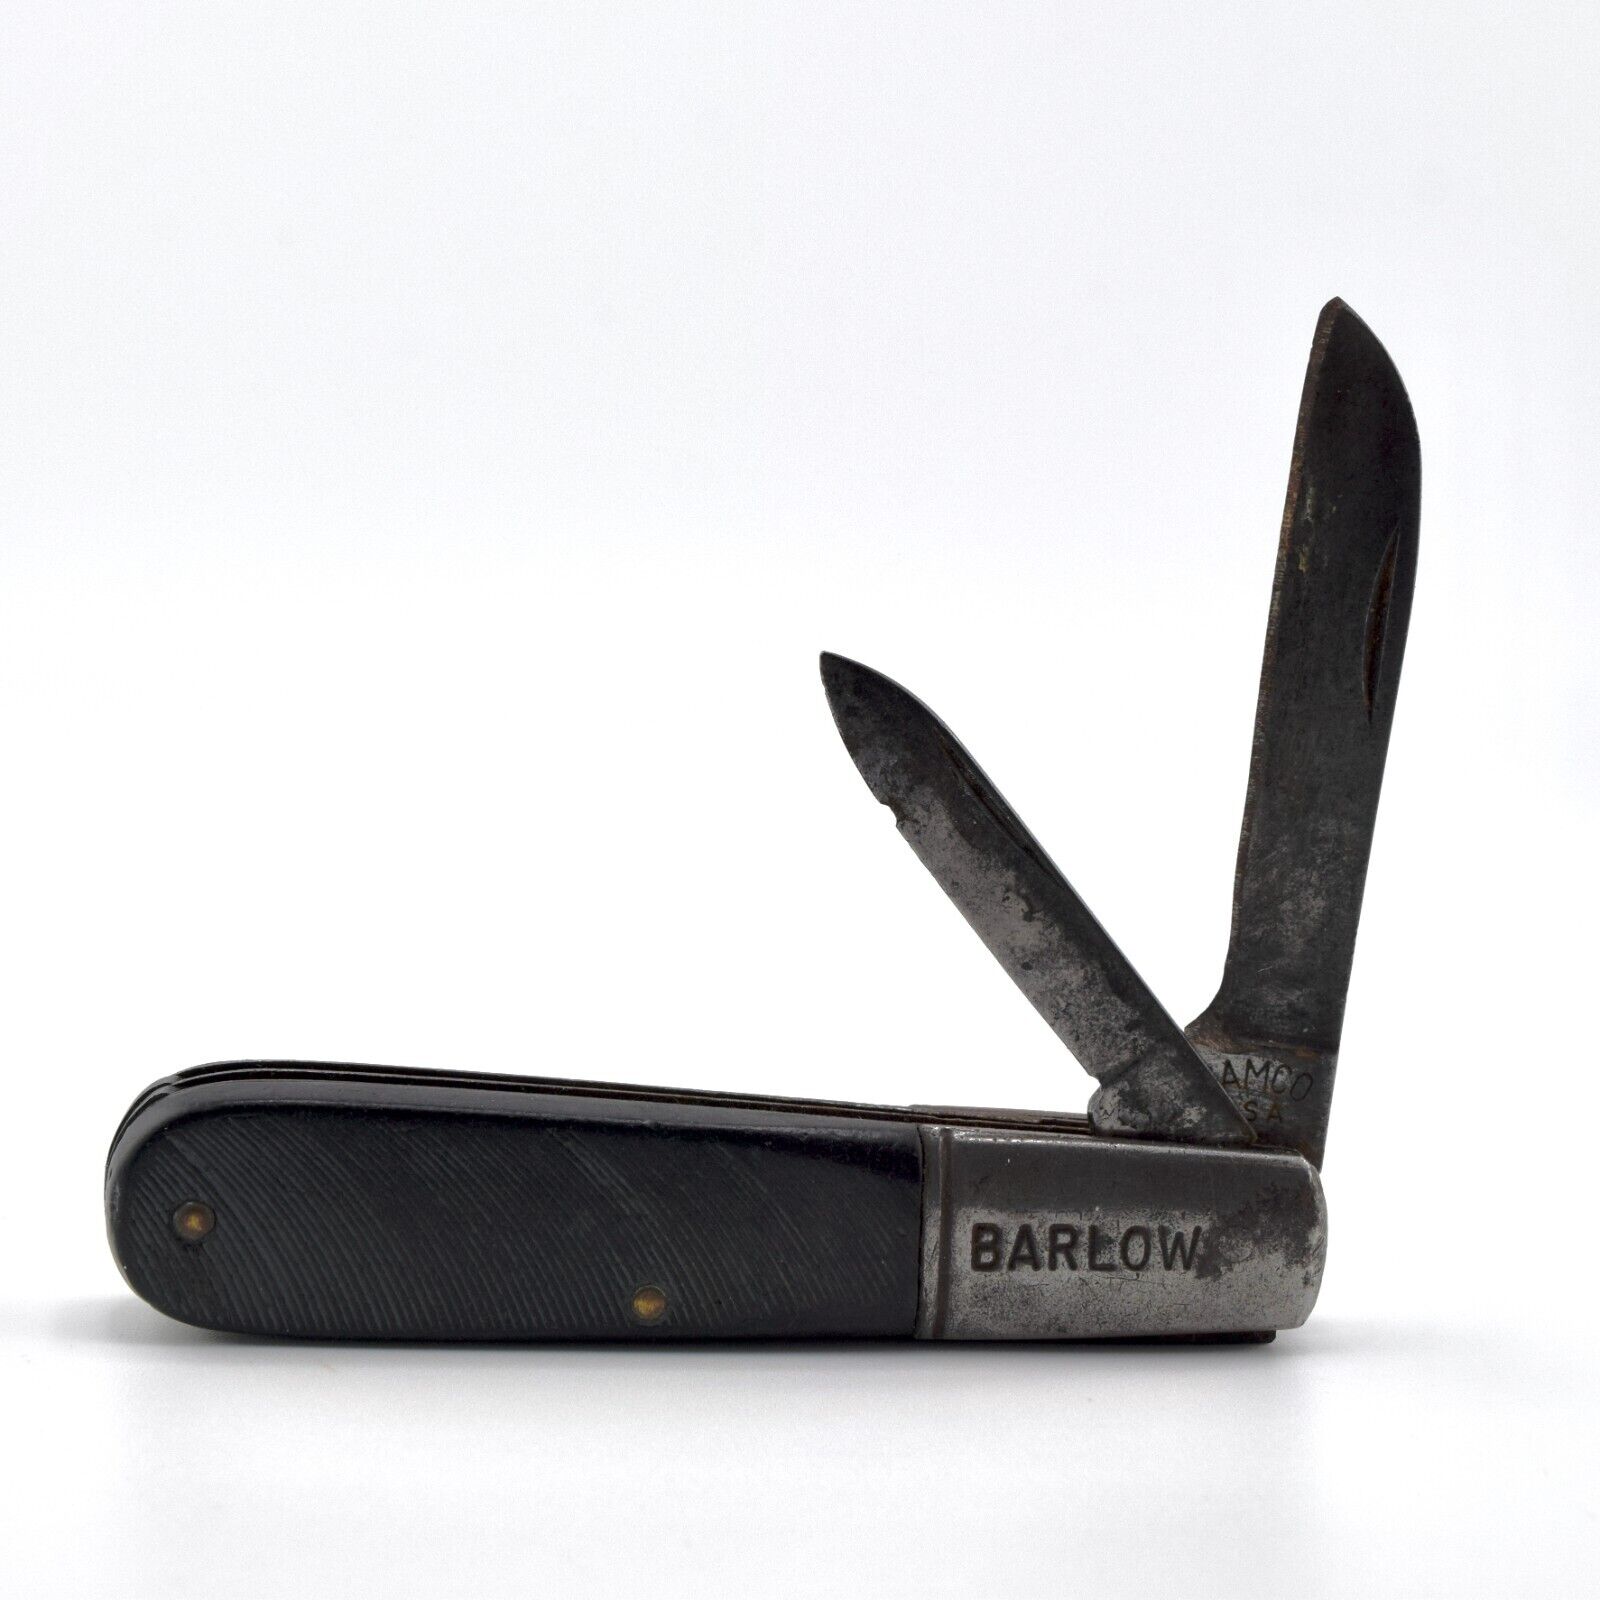 Vintage Camco USA 2 Blade Folding Pocket Knife